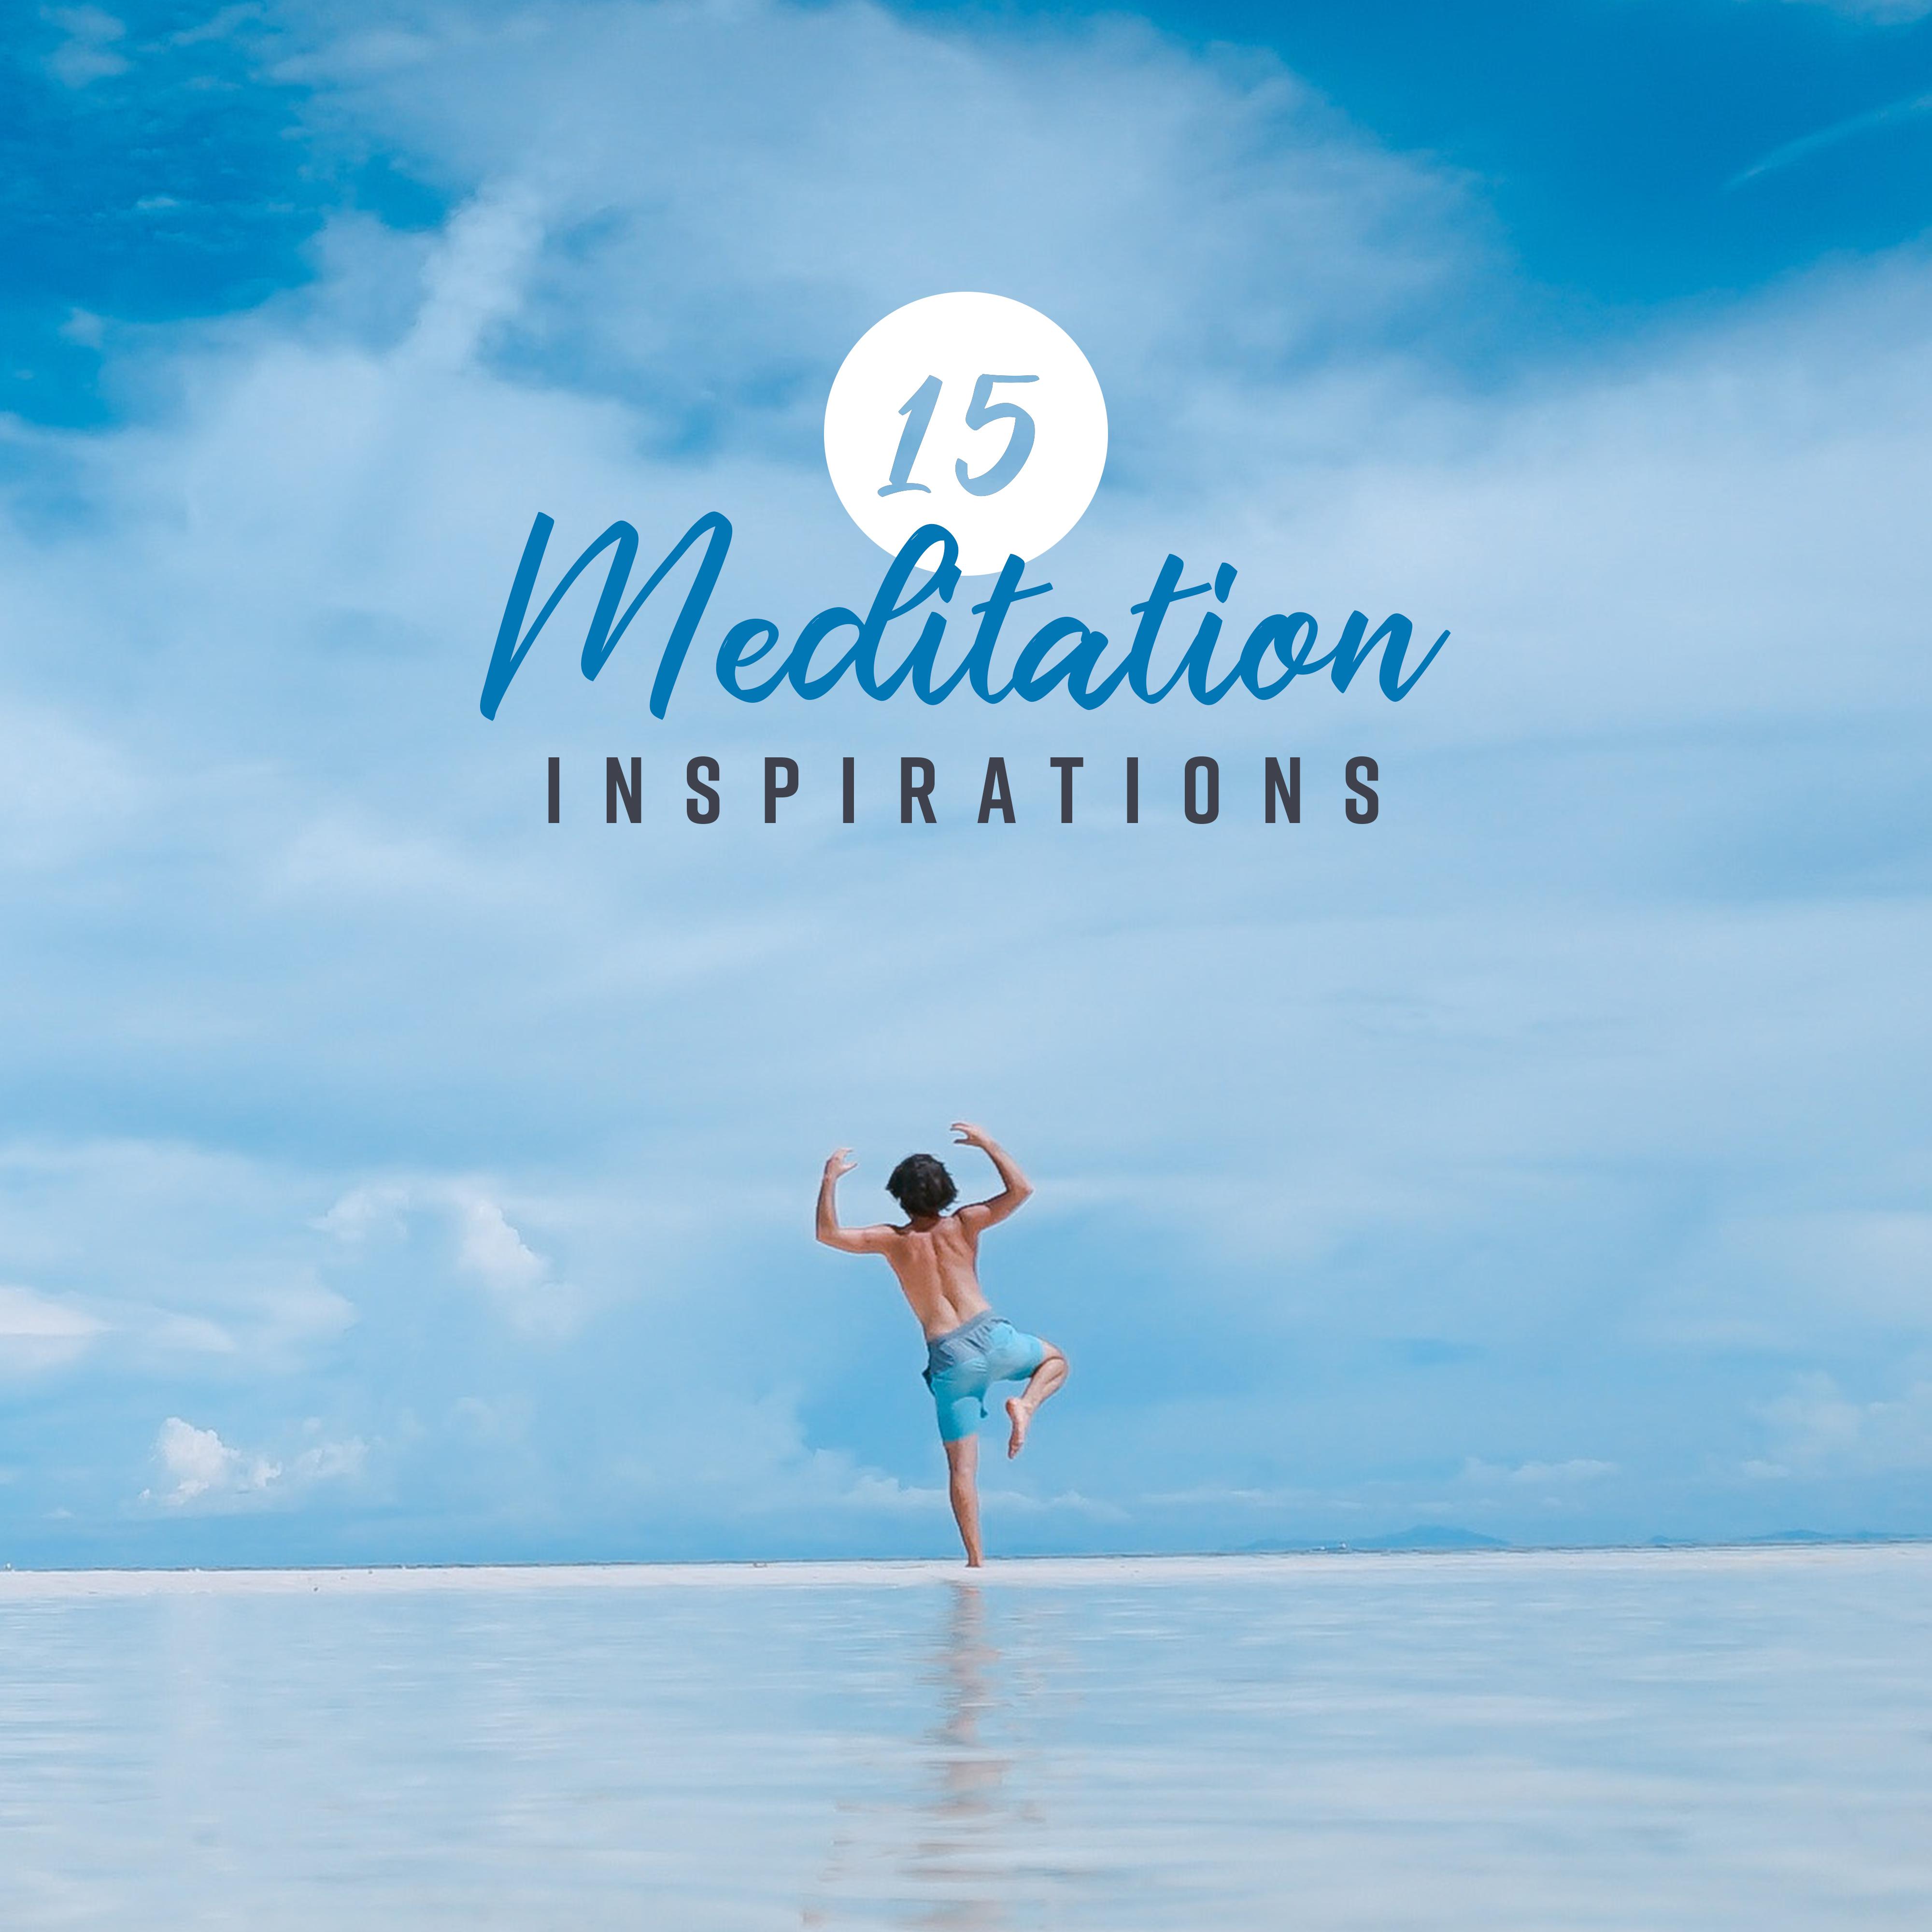 15 Meditation Inspirations